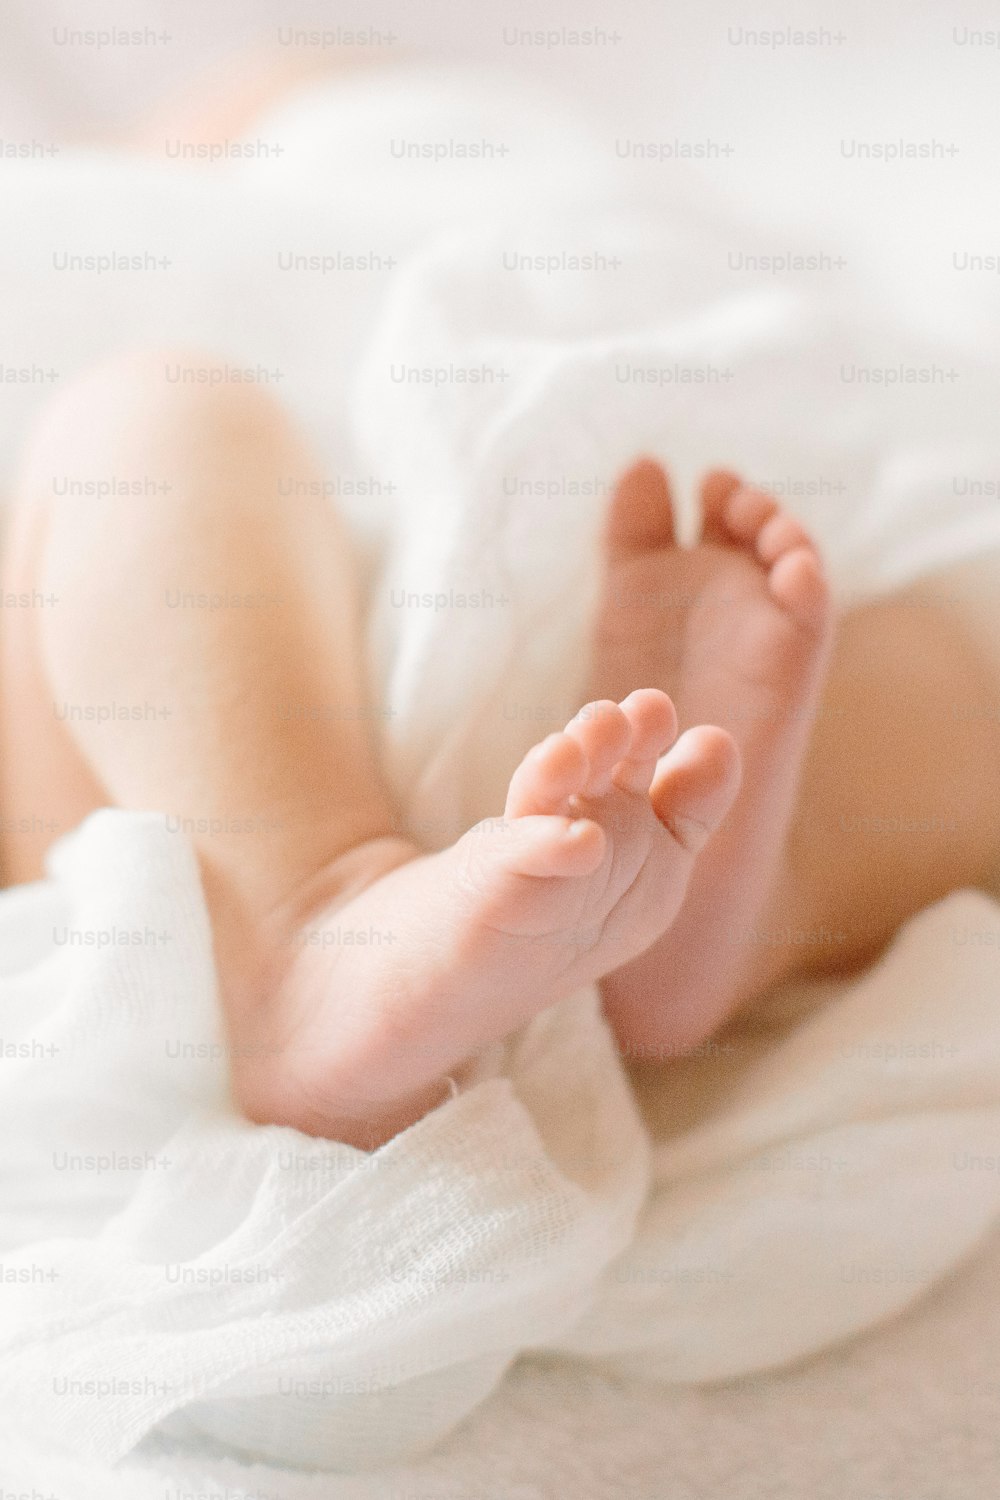 Gambe del bambino appena nate su un panno peloso che indossa una fascia bianca